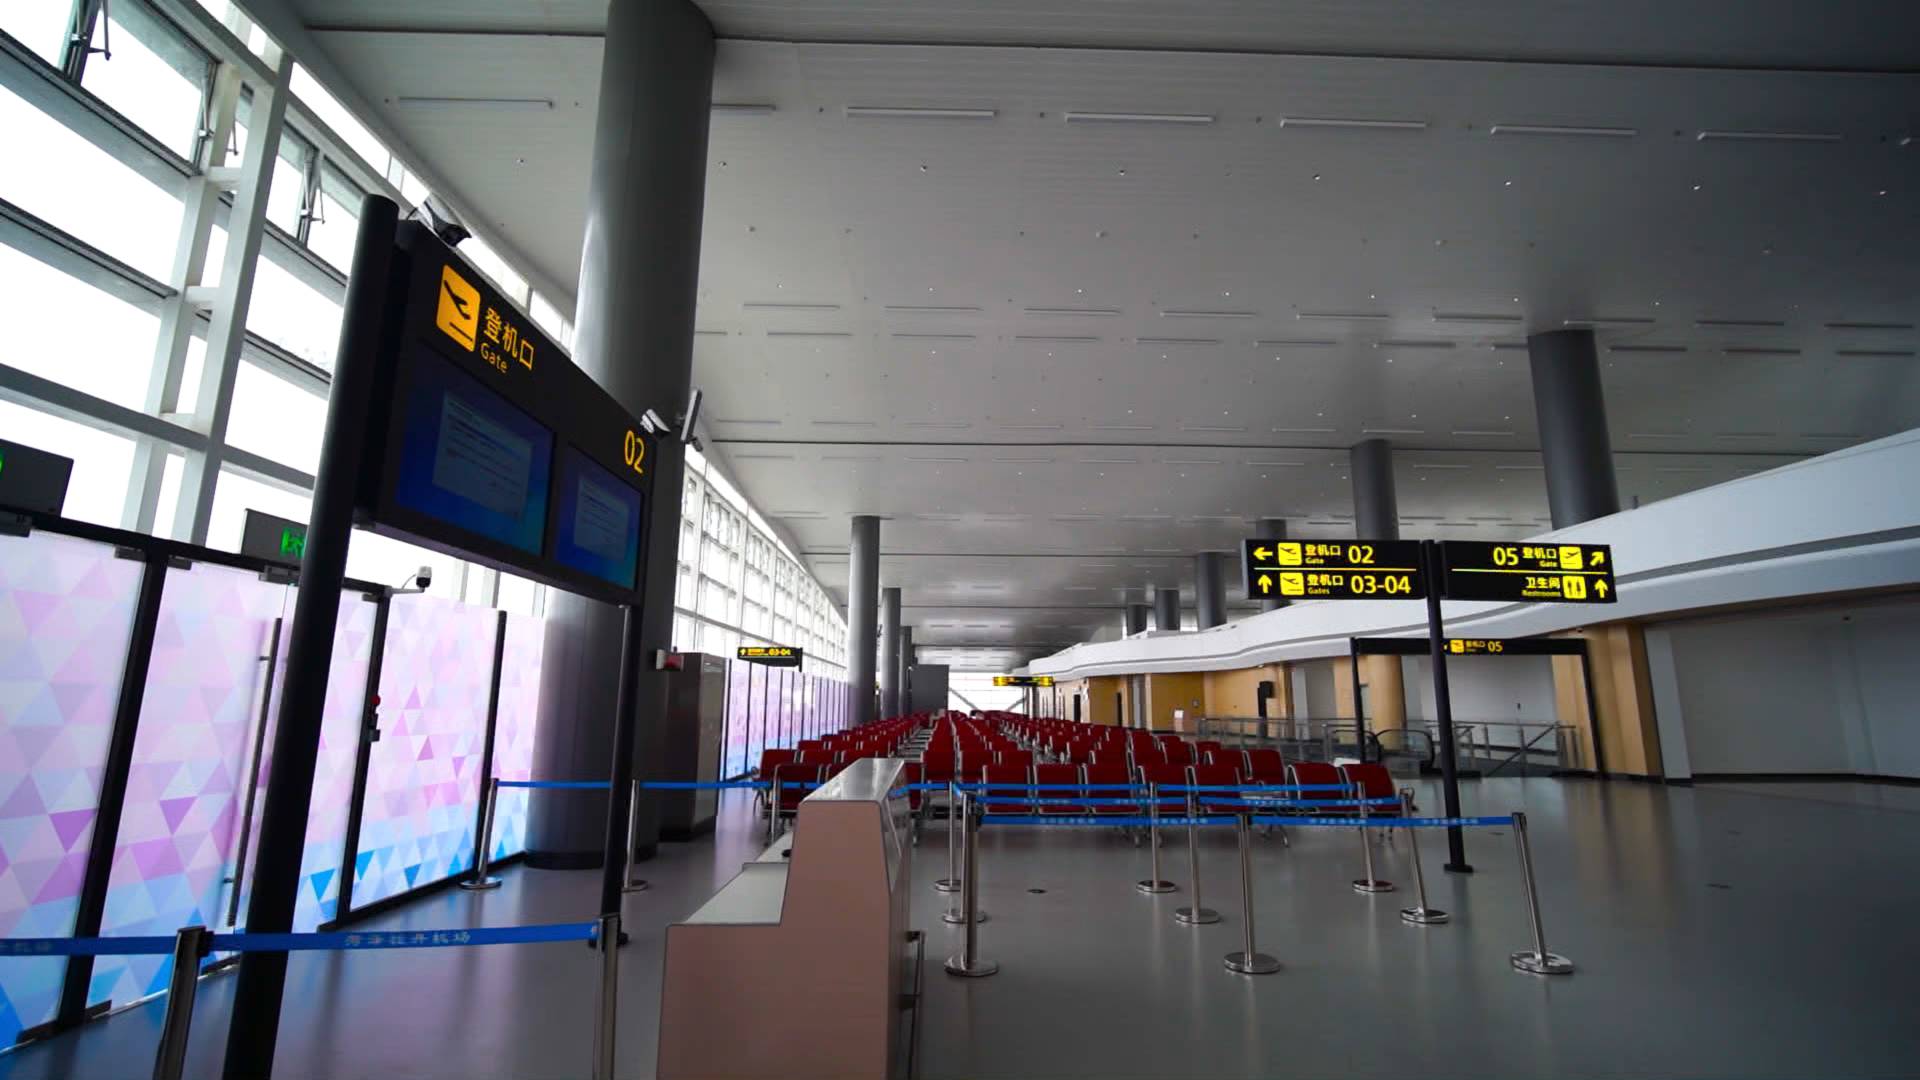 菏泽牡丹机场正式通航